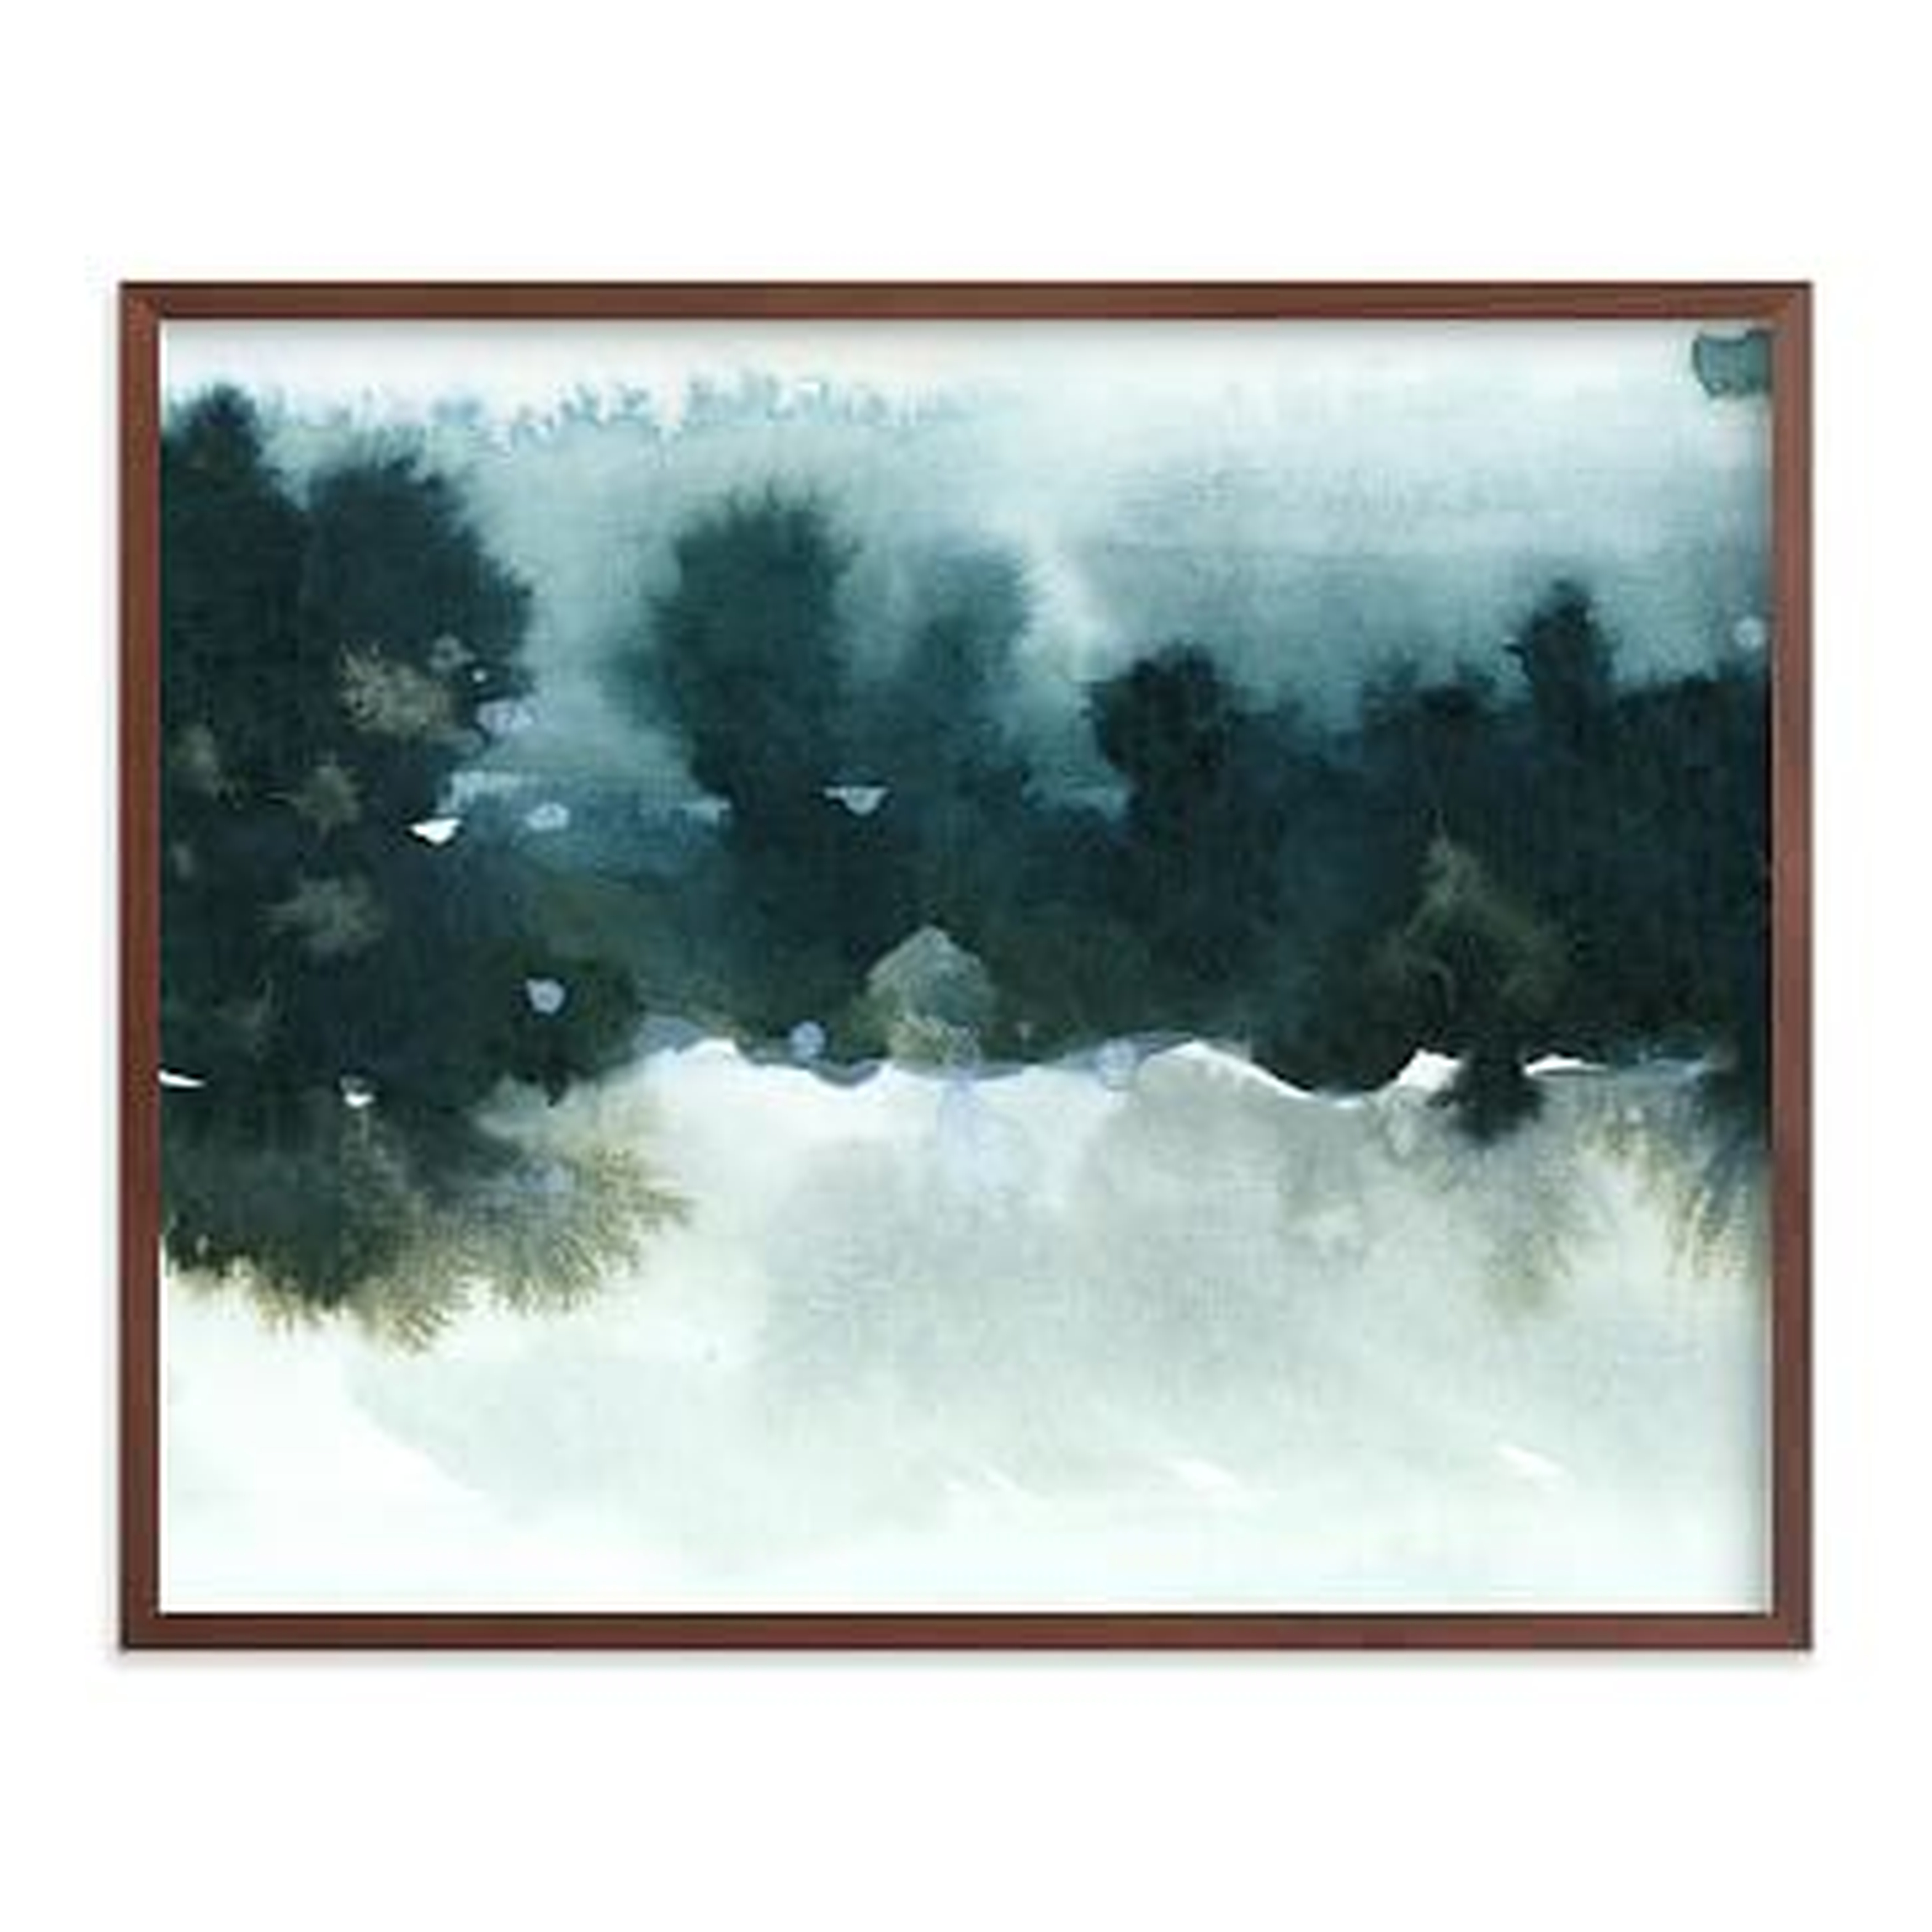 Night Falling 2 by Lindsay Megahed, 20"x16", Walnut Wood Frame - West Elm